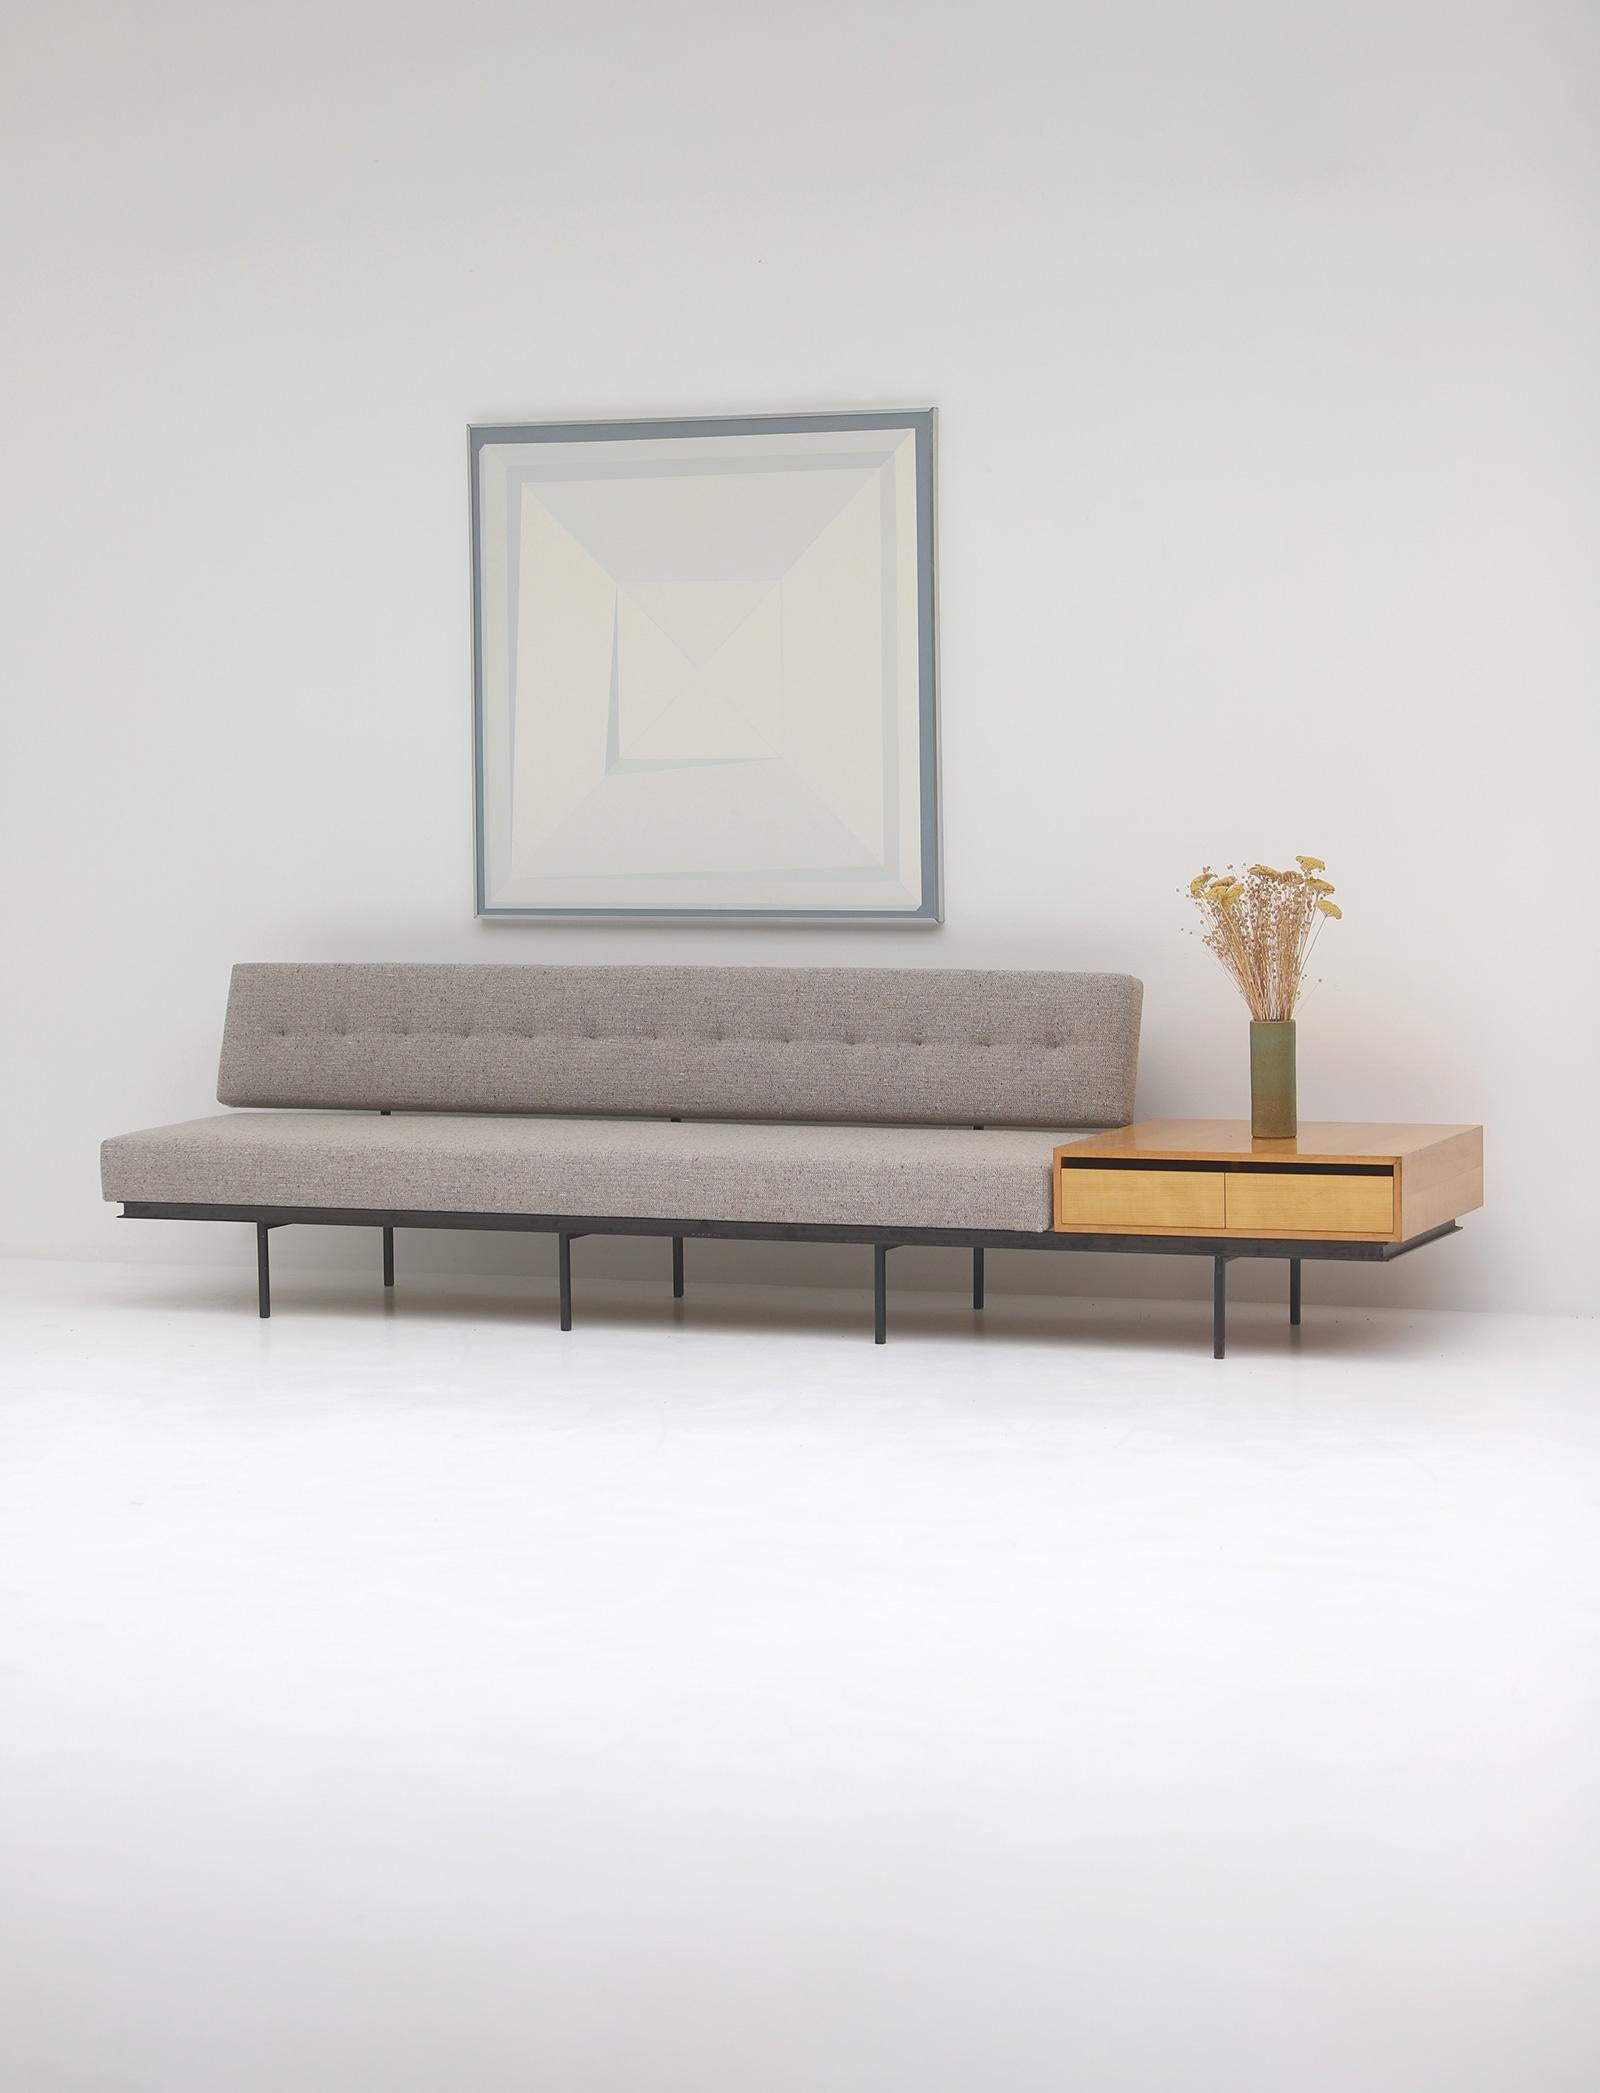 Mid-Century-Sofa mit Beistelltisch aus Holz, entworfen von Florence Knoll in den 1960er Jahren. Das Sofa hat einen schwarzen Metallrahmen, der eine feste und gut definierte Rückenlehne trägt, was es sehr bequem macht. Das Sofa hat neuen Schaumstoff